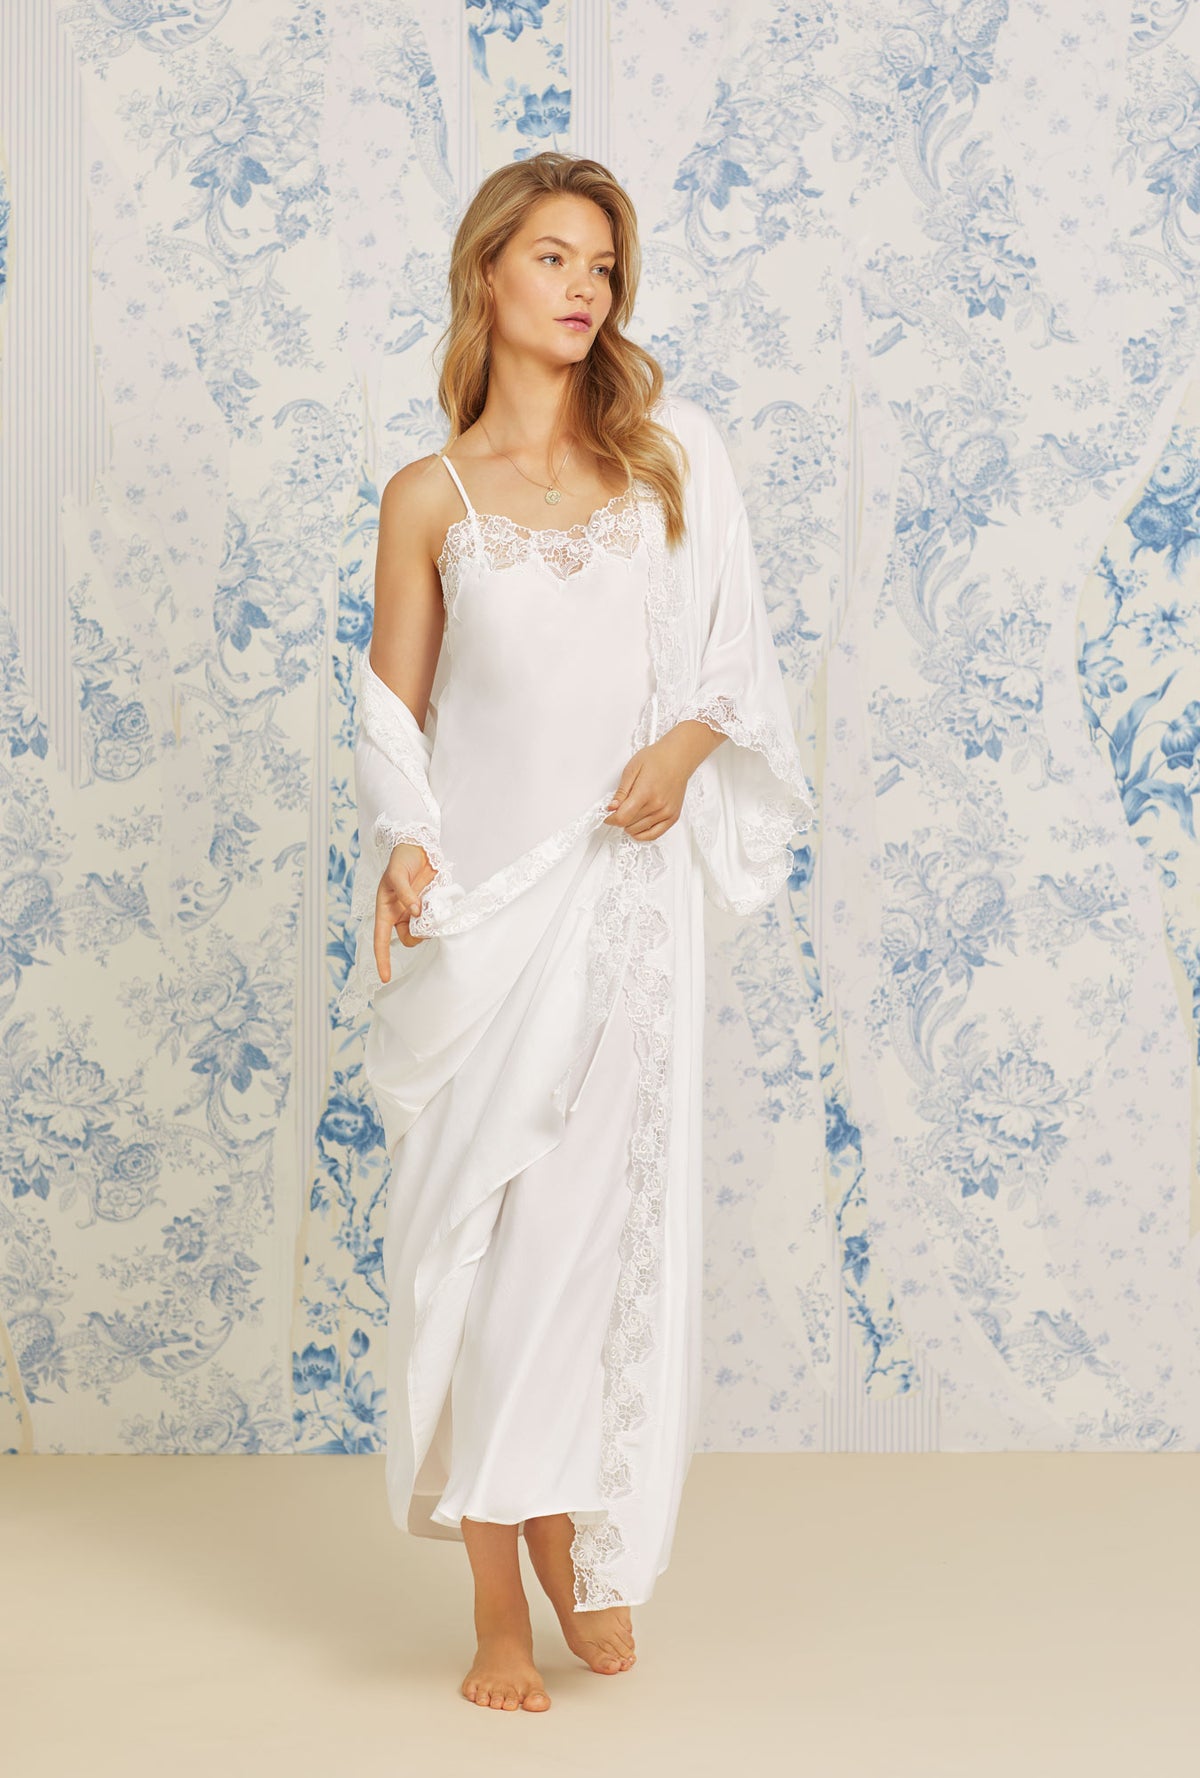 A lady wearing white sleeveless santorini satin gown.